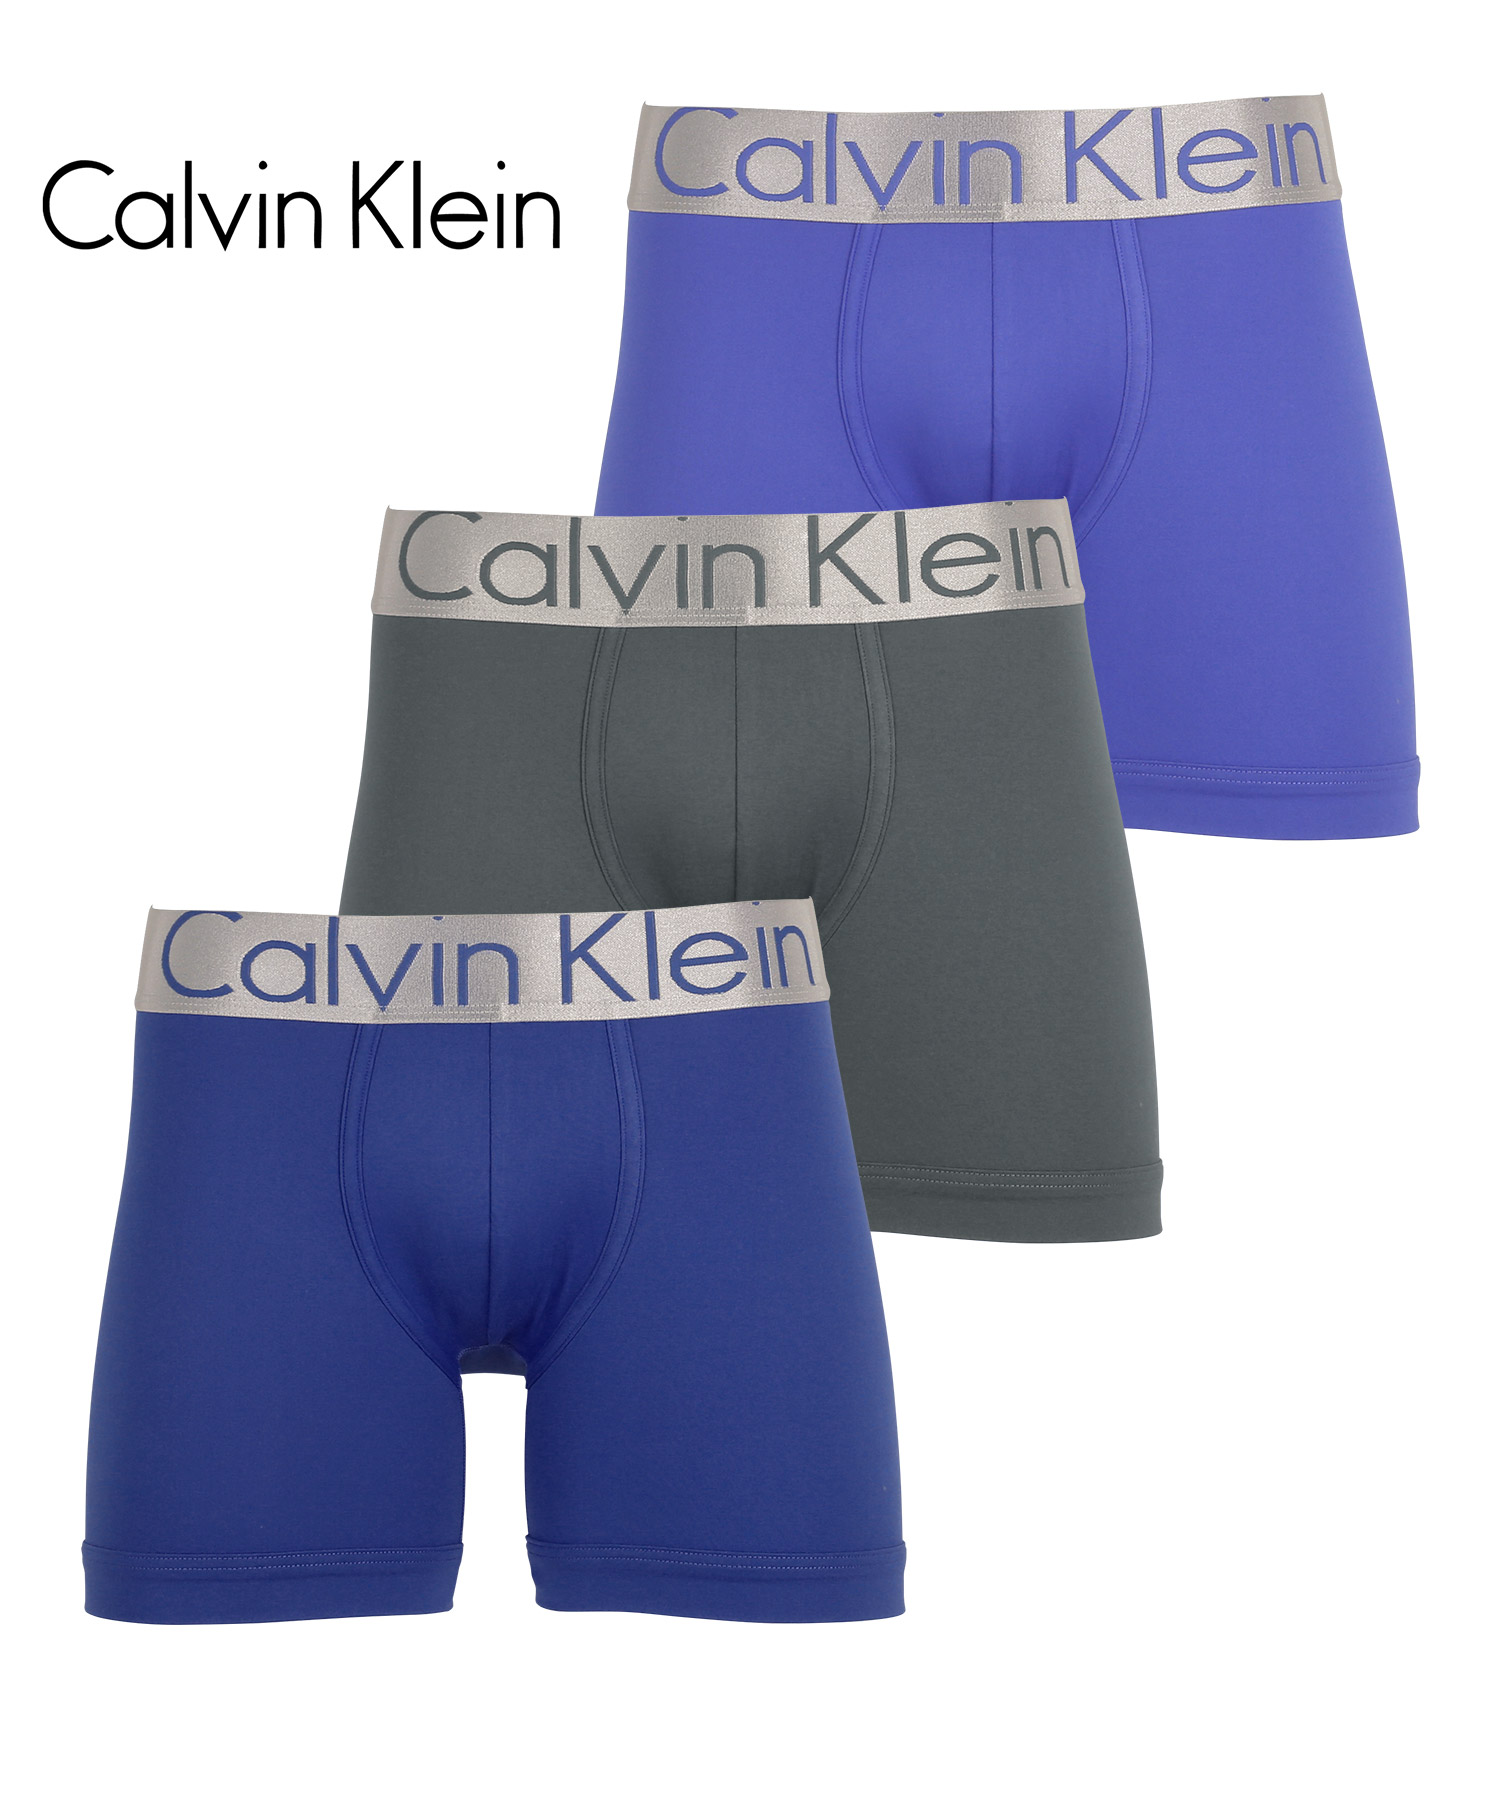 カルバンクライン ボクサーパンツ 3枚セット メンズ ロング Calvin Klein アンダーウェア 男性下着 ツルツル 速乾 CK 父の日